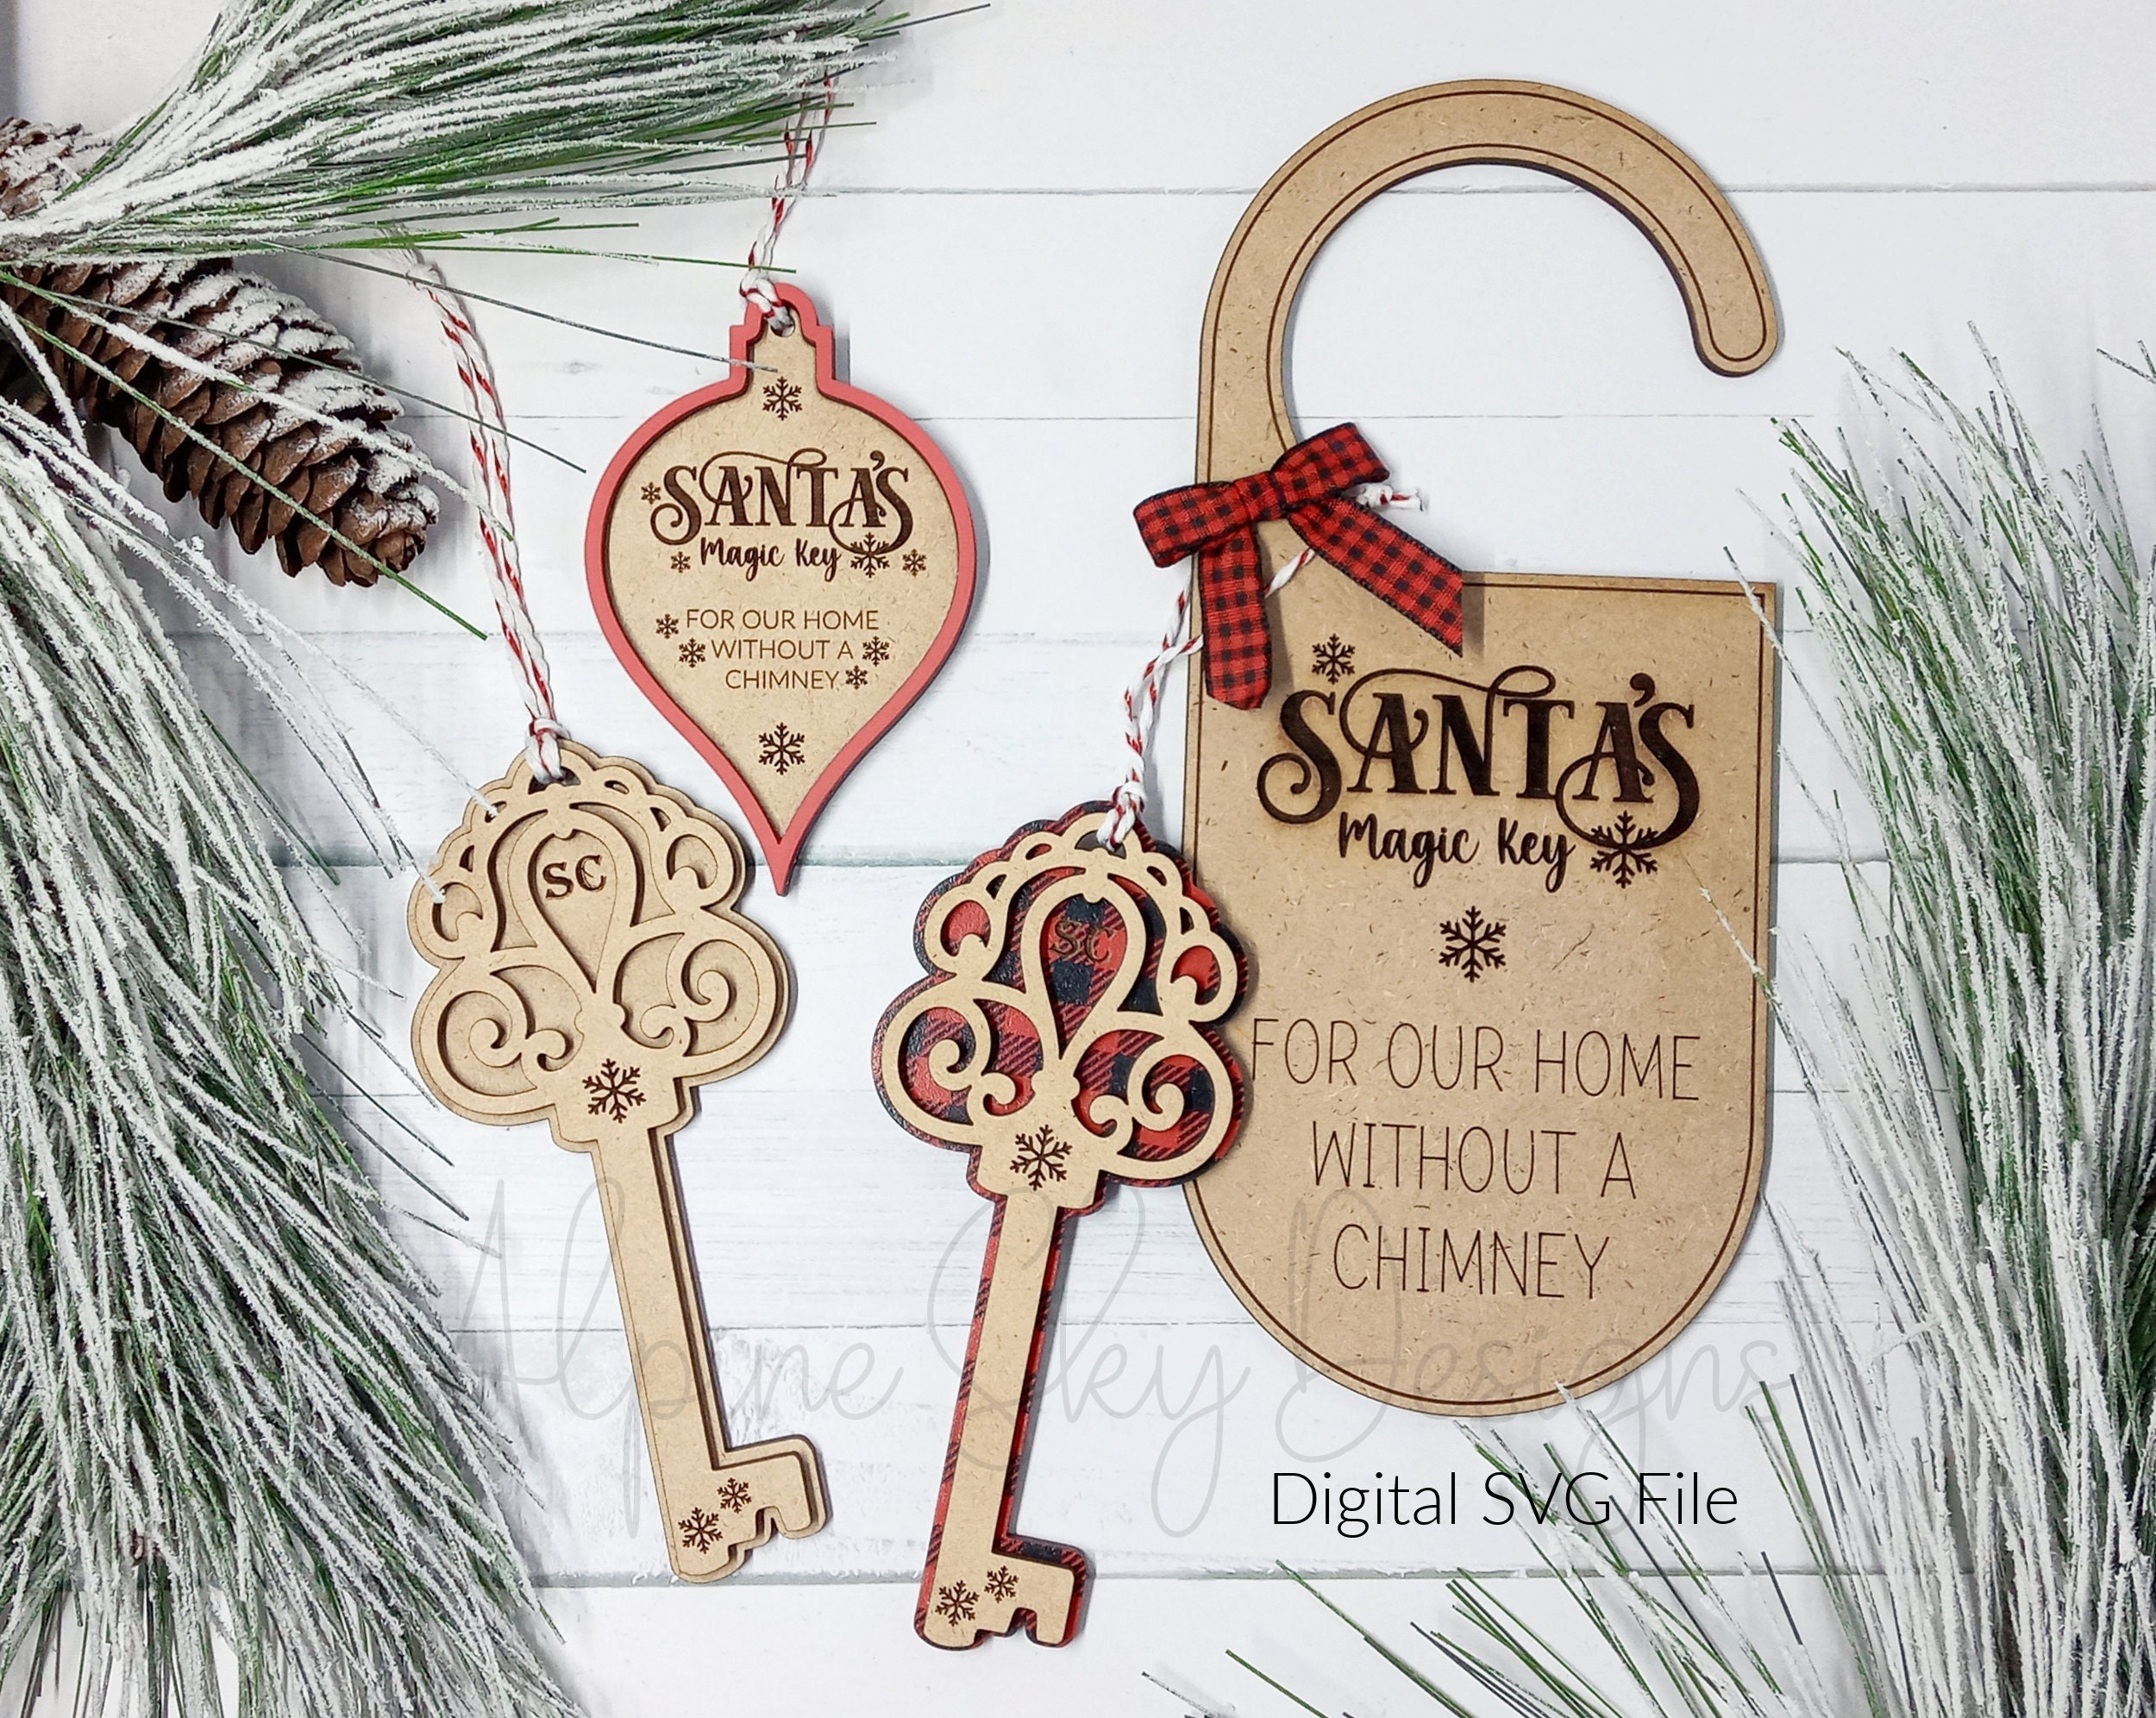 A Magic Chimney Key for Santa Claus Ornament by Ganz